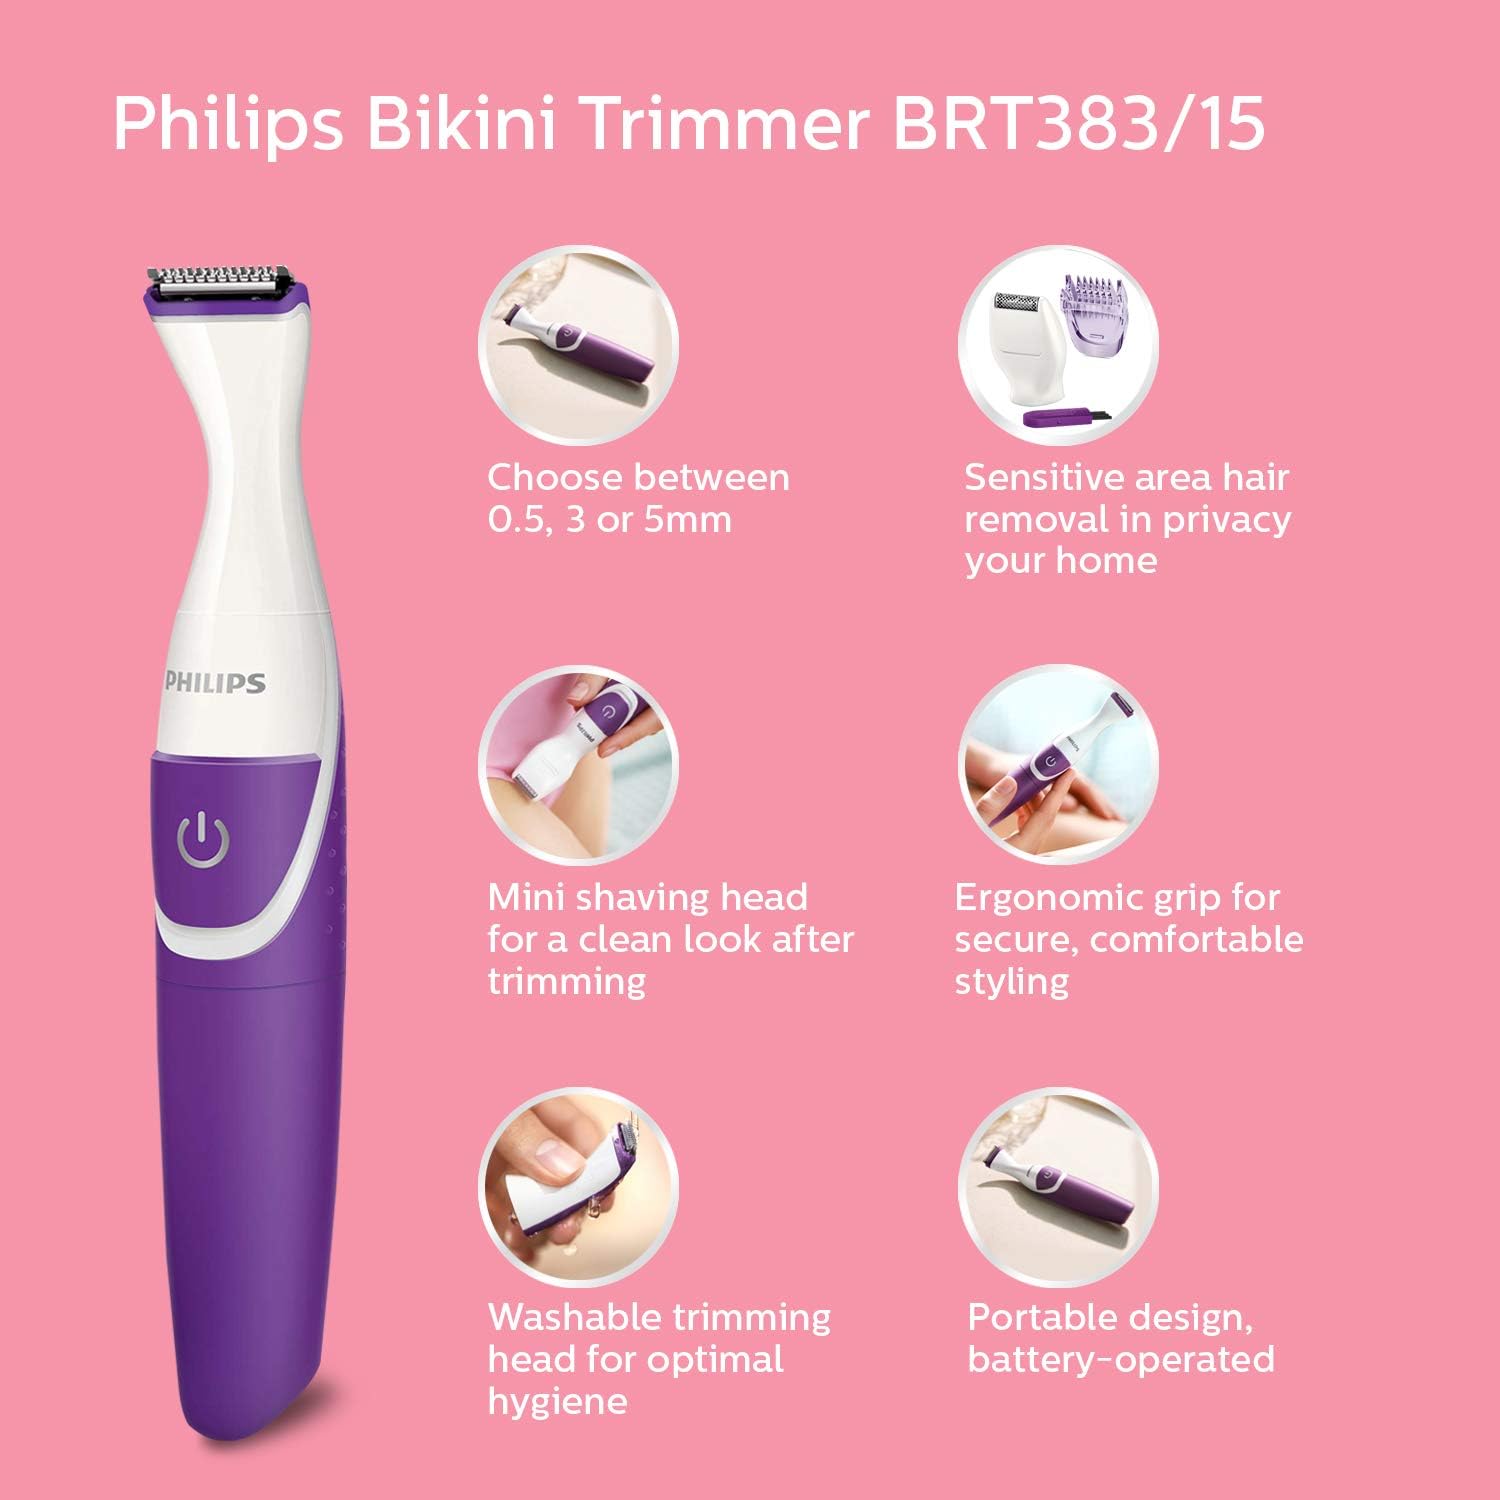 Philips BRT383/15 BikiniGenie Trimmer